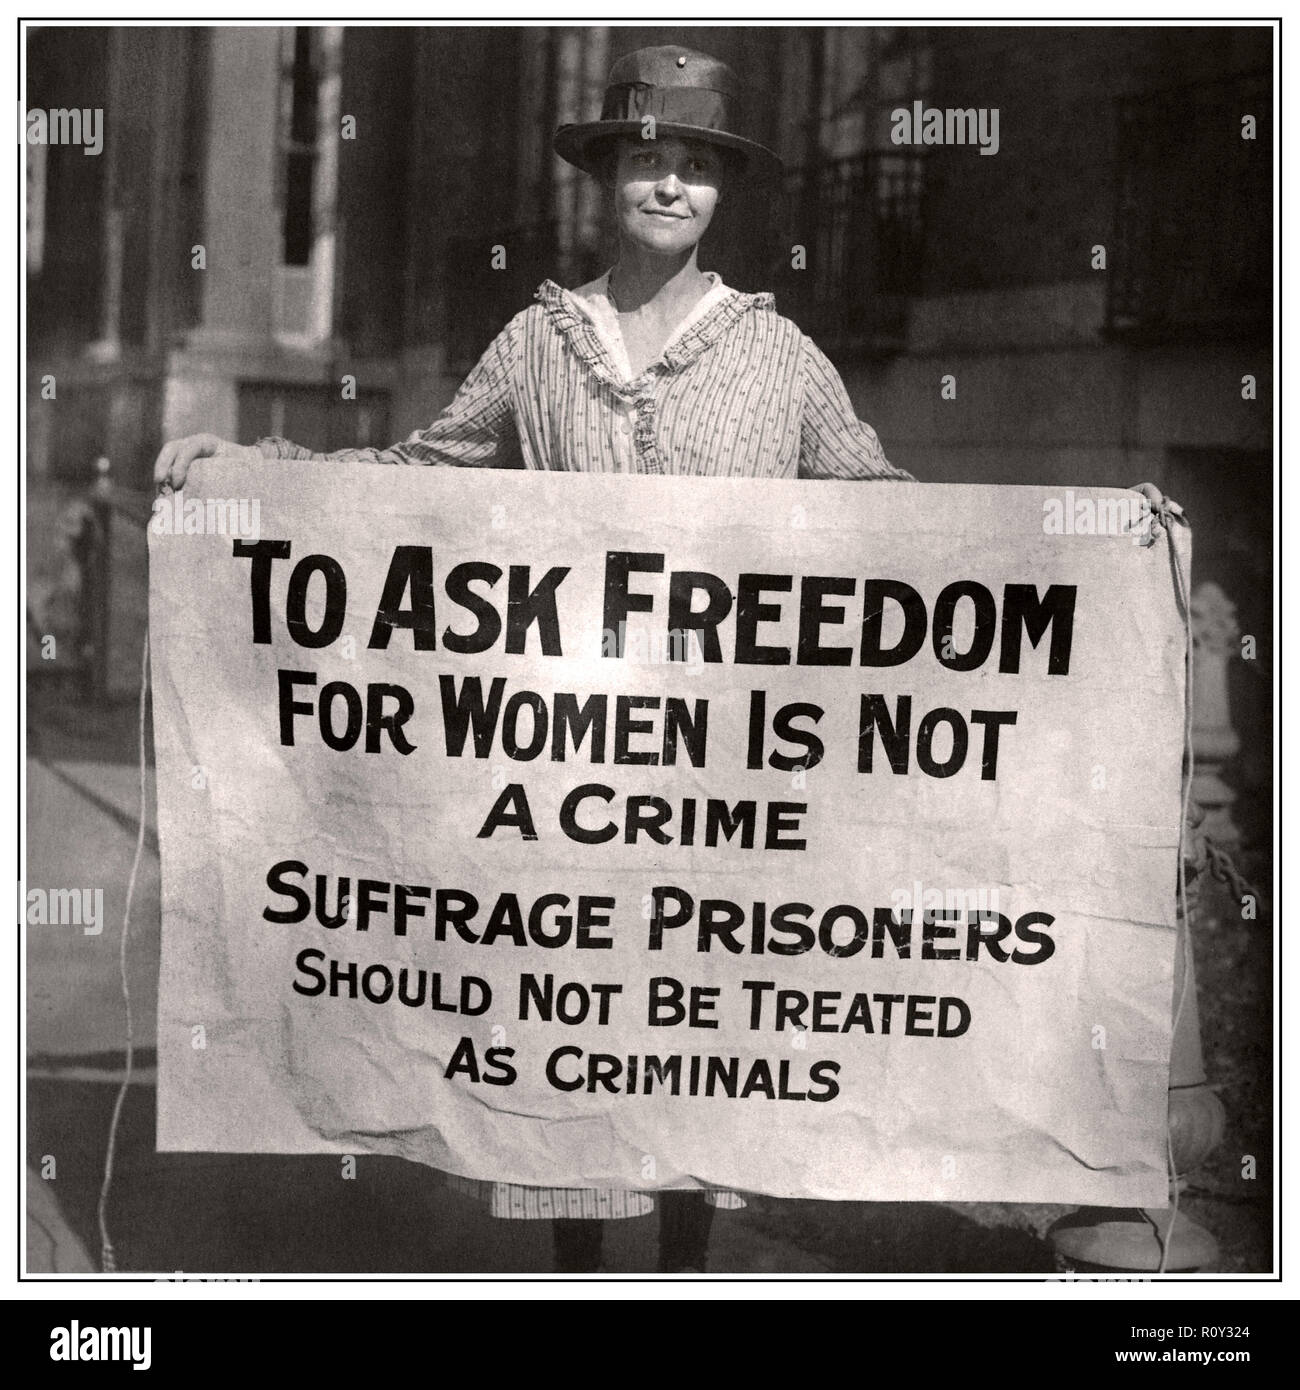 Die Vintage Frauenwahlrecht Wahlrecht Bild Frau Wahlrecht Picket Proteste Banner Suffragist Protesten Kriminelle festgenommen, die Mitglieder der Partei der Nationalen Frau, 1910 Washington DC Stockfoto